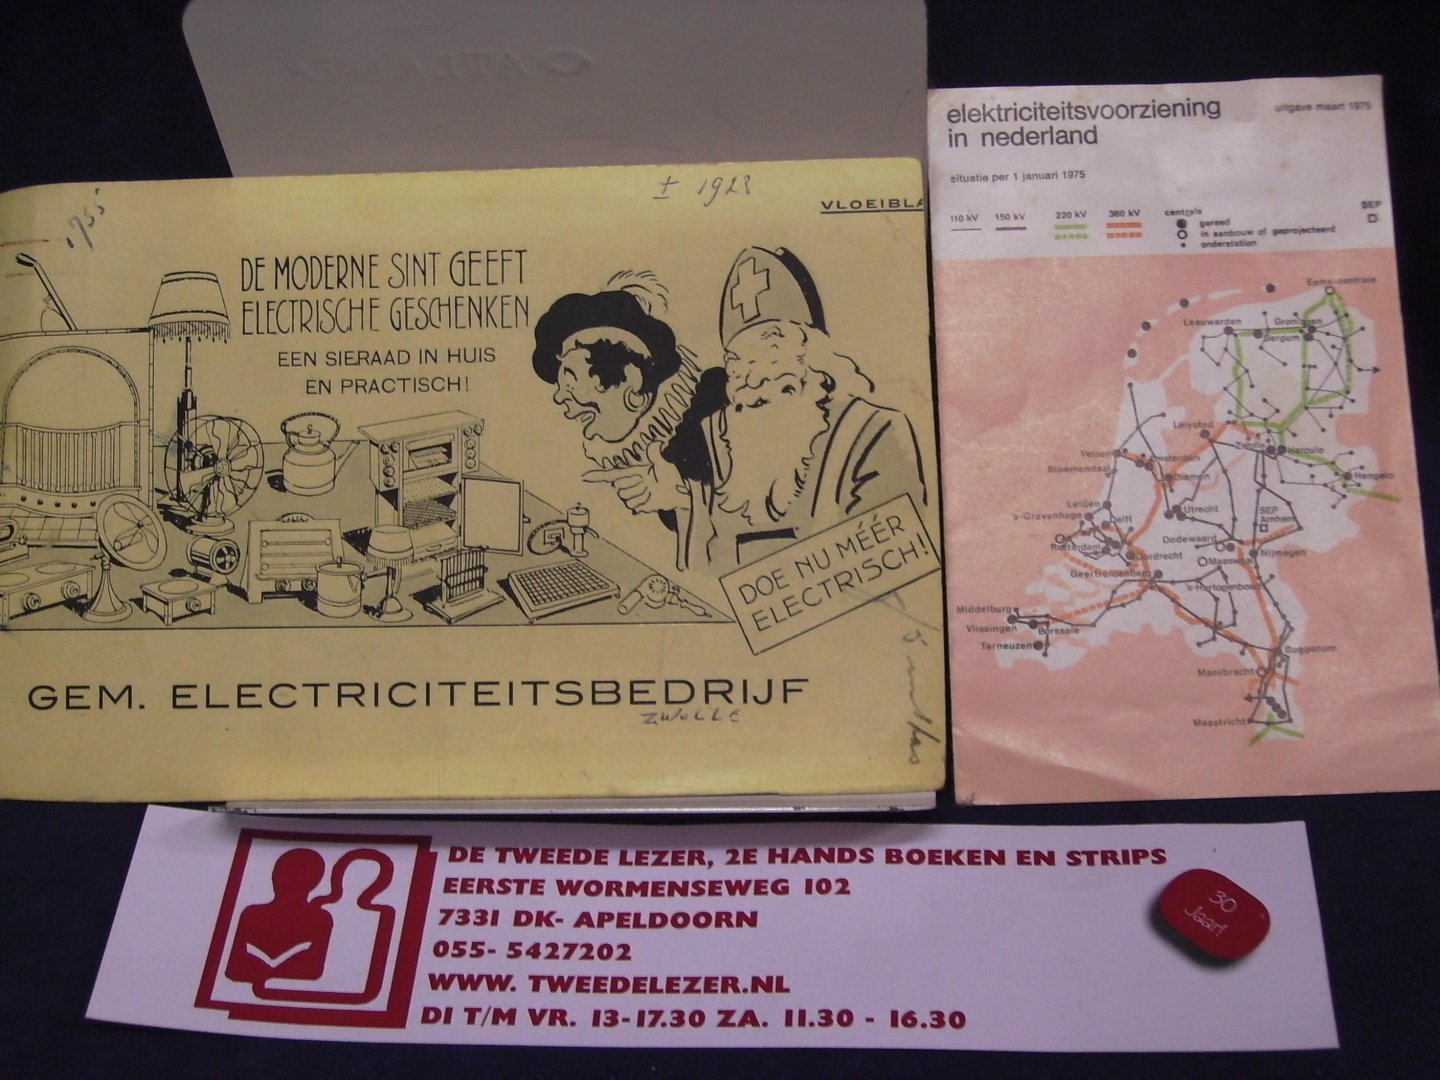 Reclamebureau - kaart Gem. Eletriciteitsbedrijf - De Moderne Sint Geeft Electrische Geschenken / infoboekje electriciteitvoorziening in nederland 1975